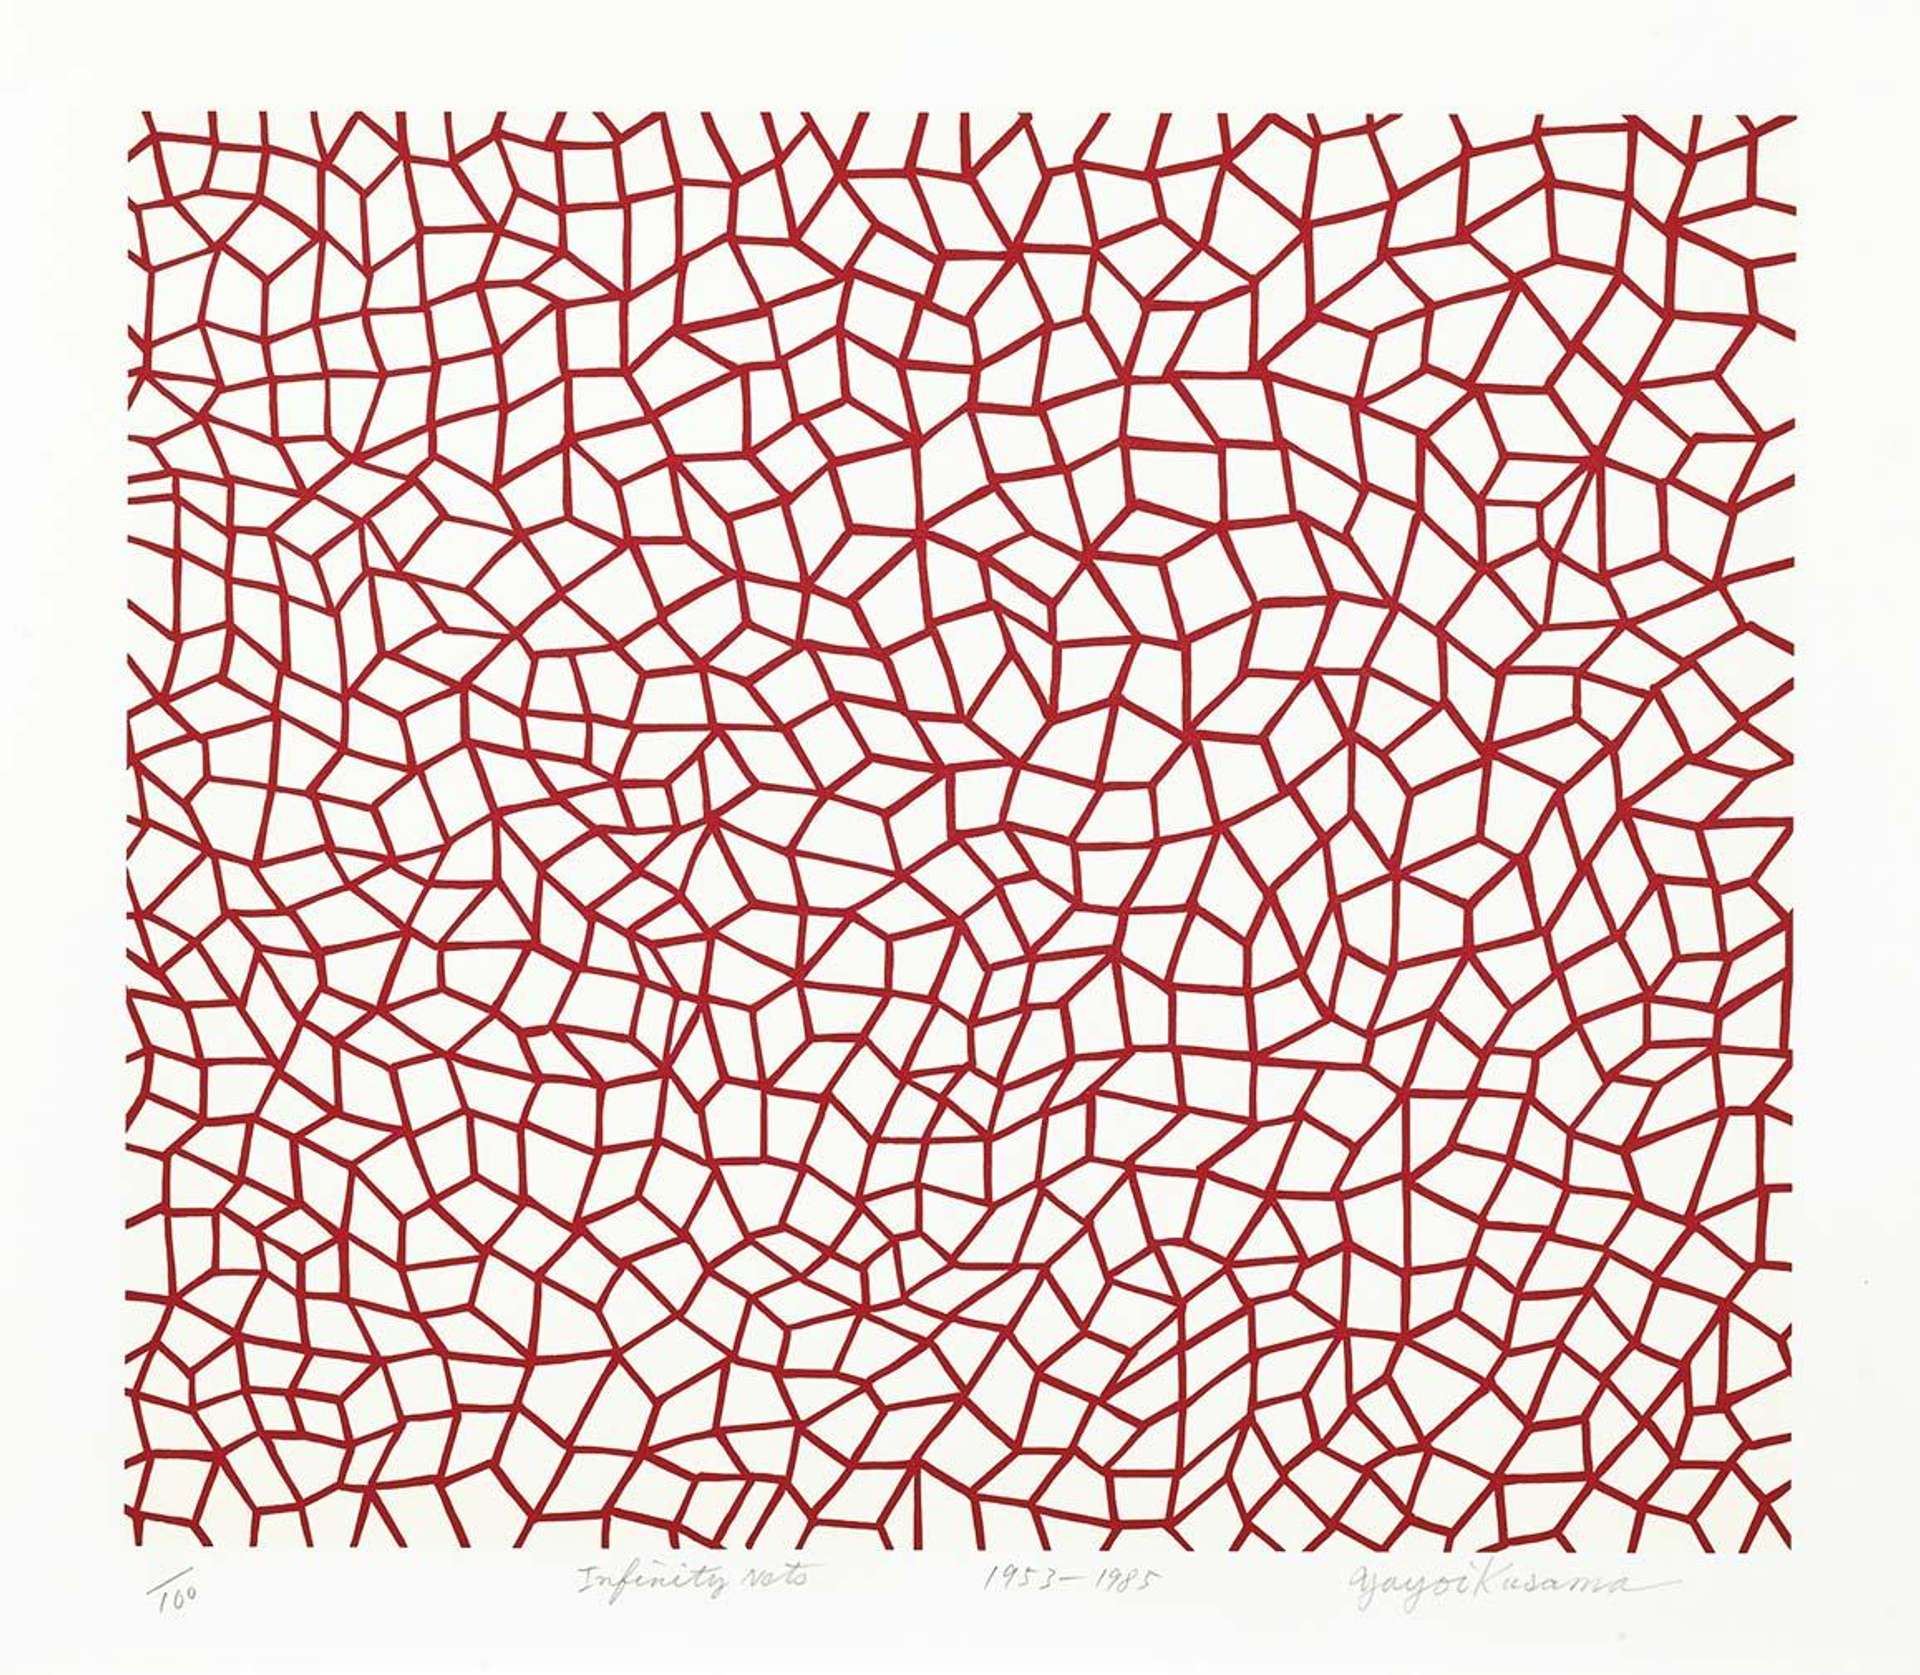 Yayomi Kusama's Infinity Nets, Kusama 76. A screenprint of red, geometric patterns over a white background. 